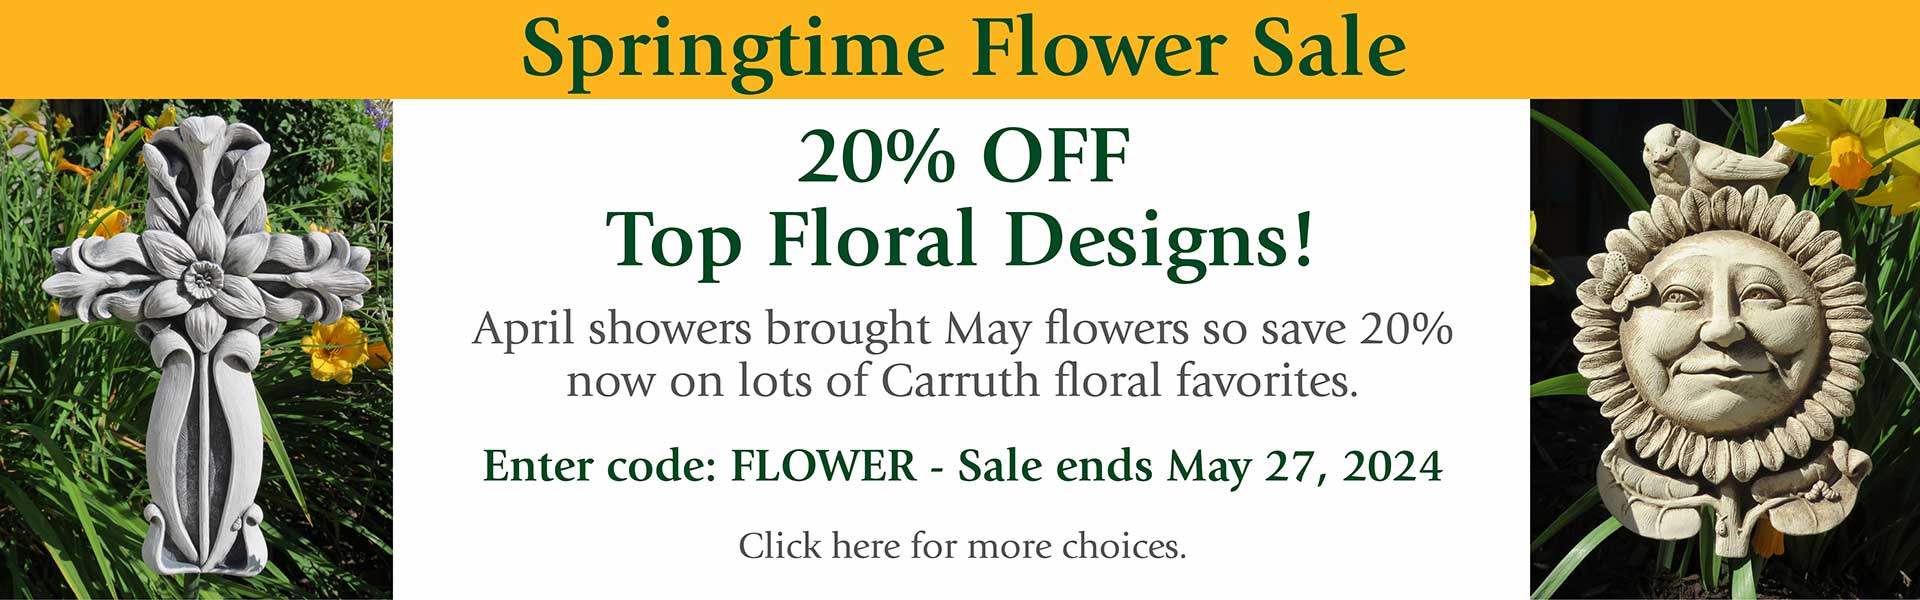 20% OFF Spring Flower Sale